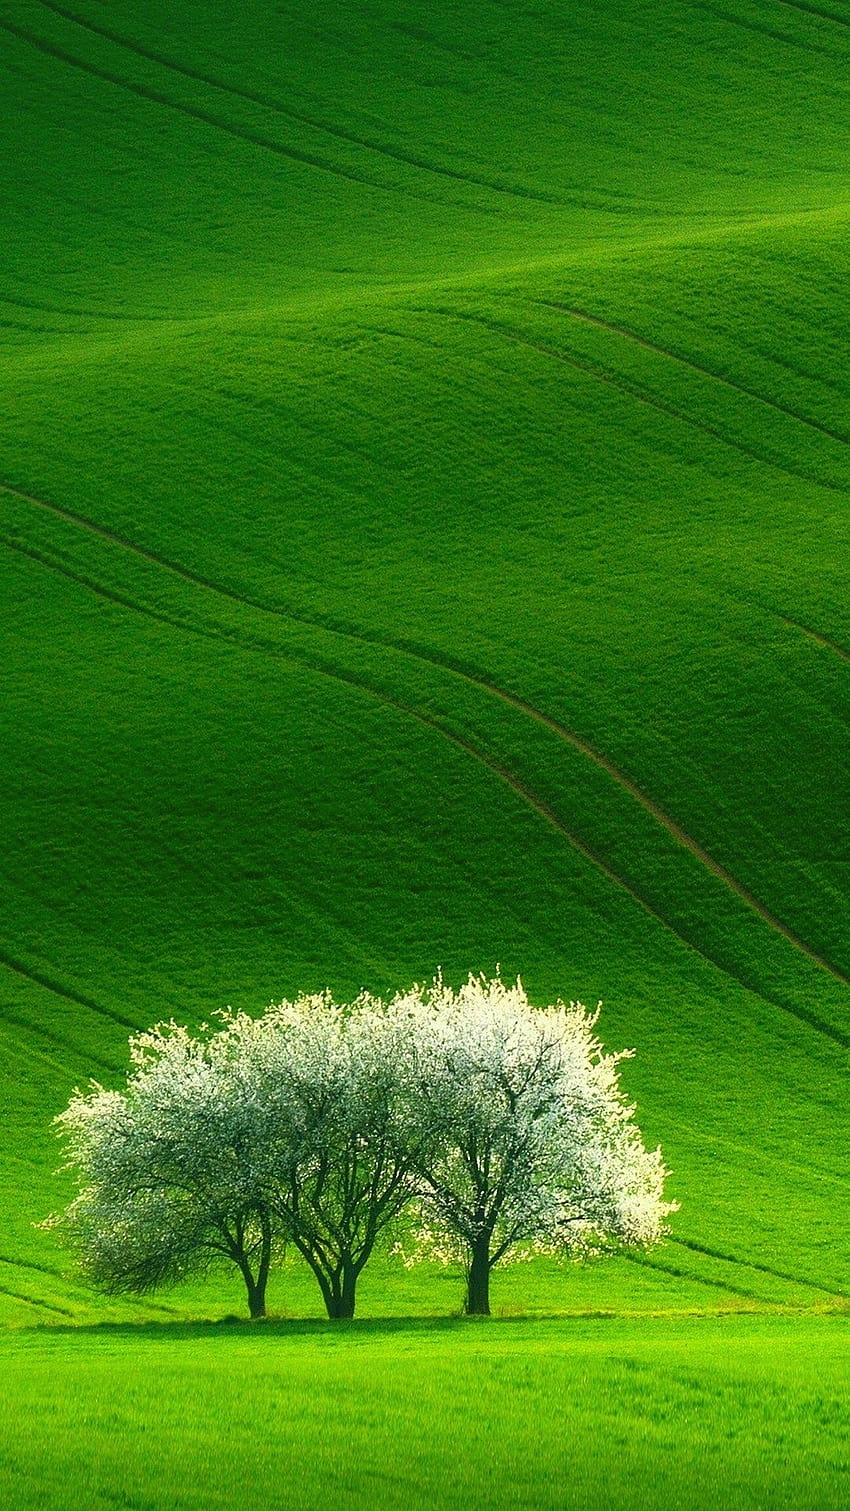 緑の美しい自然の風景 Android ⋆ Traxzee、緑の風景 Android モバイル HD電話の壁紙